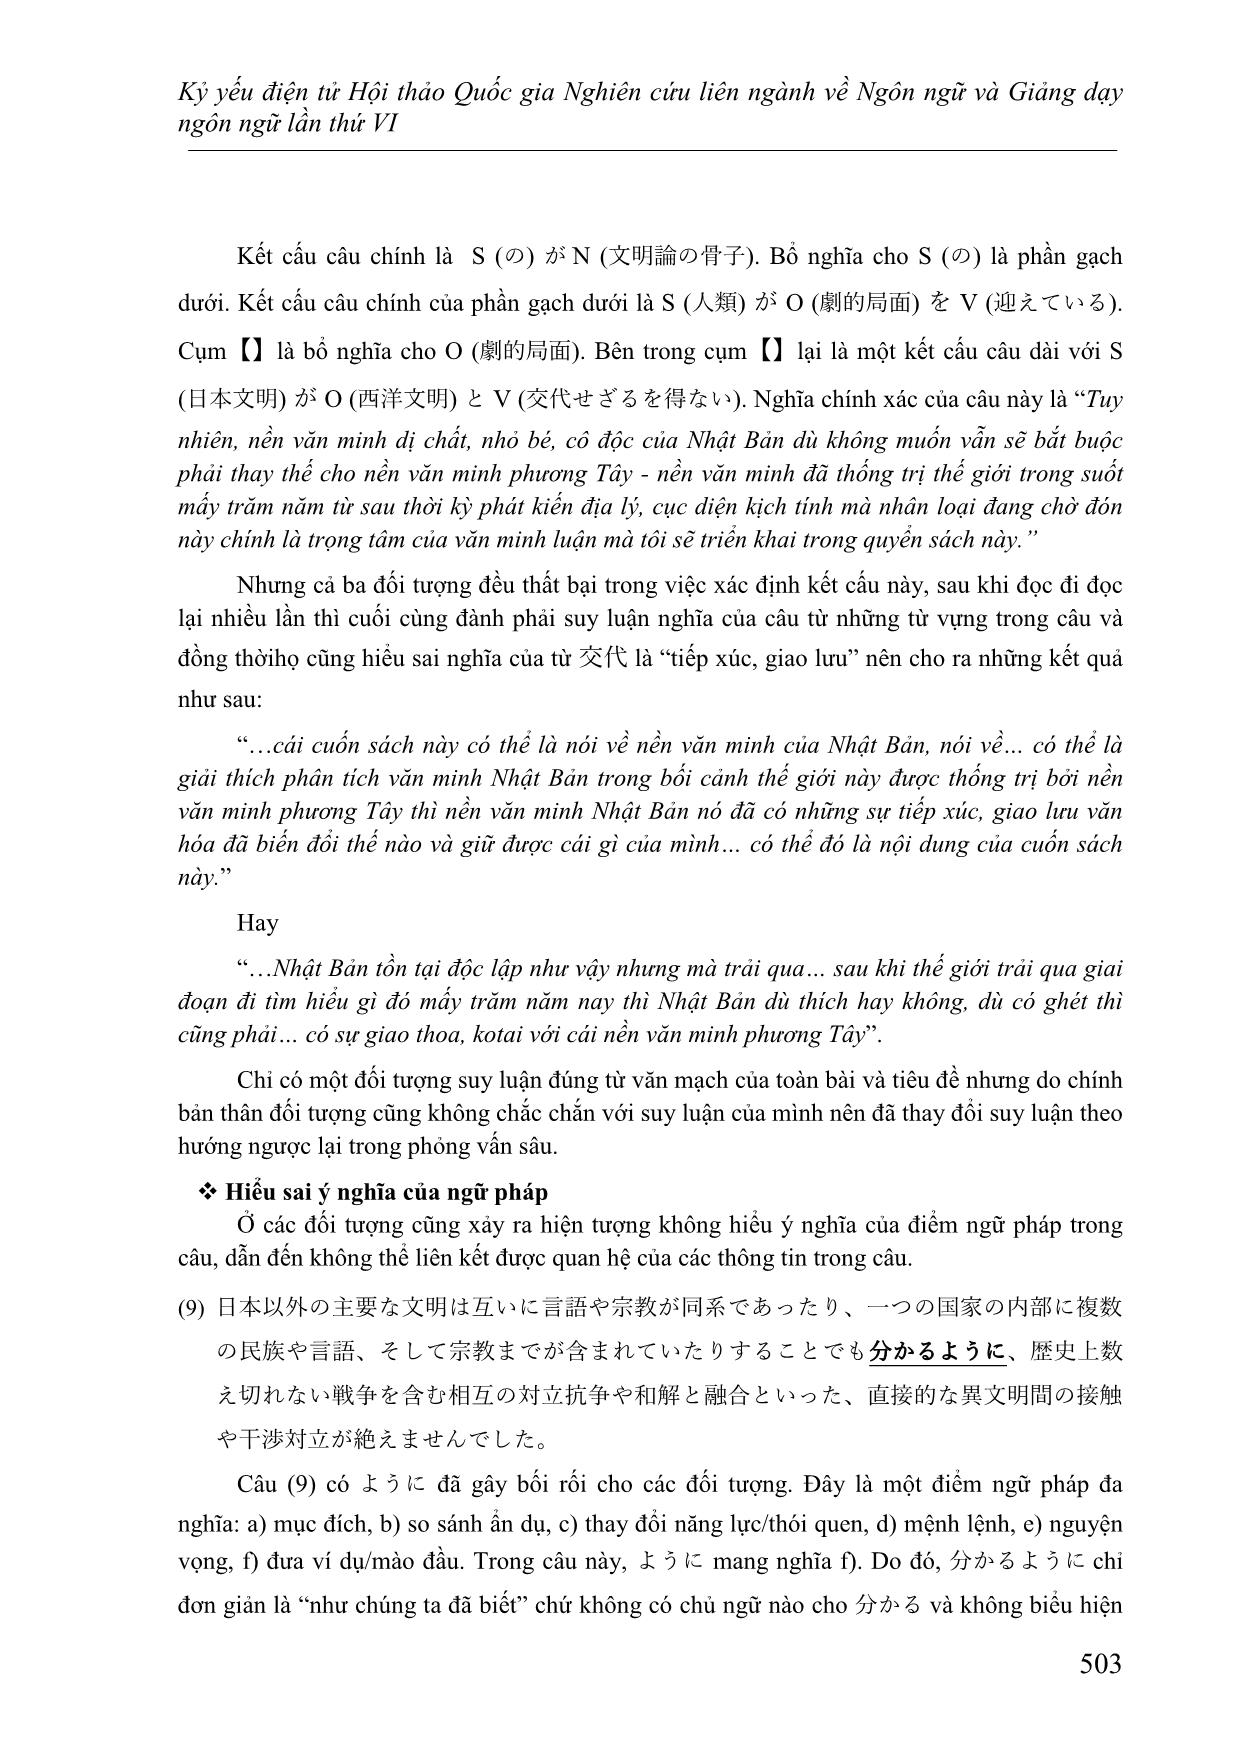 Nghiên cứu các lỗi thường gặp của người học Việt Nam ở trình độ cao cấp khi đọc hiểu văn bản tiếng Nhật trang 8